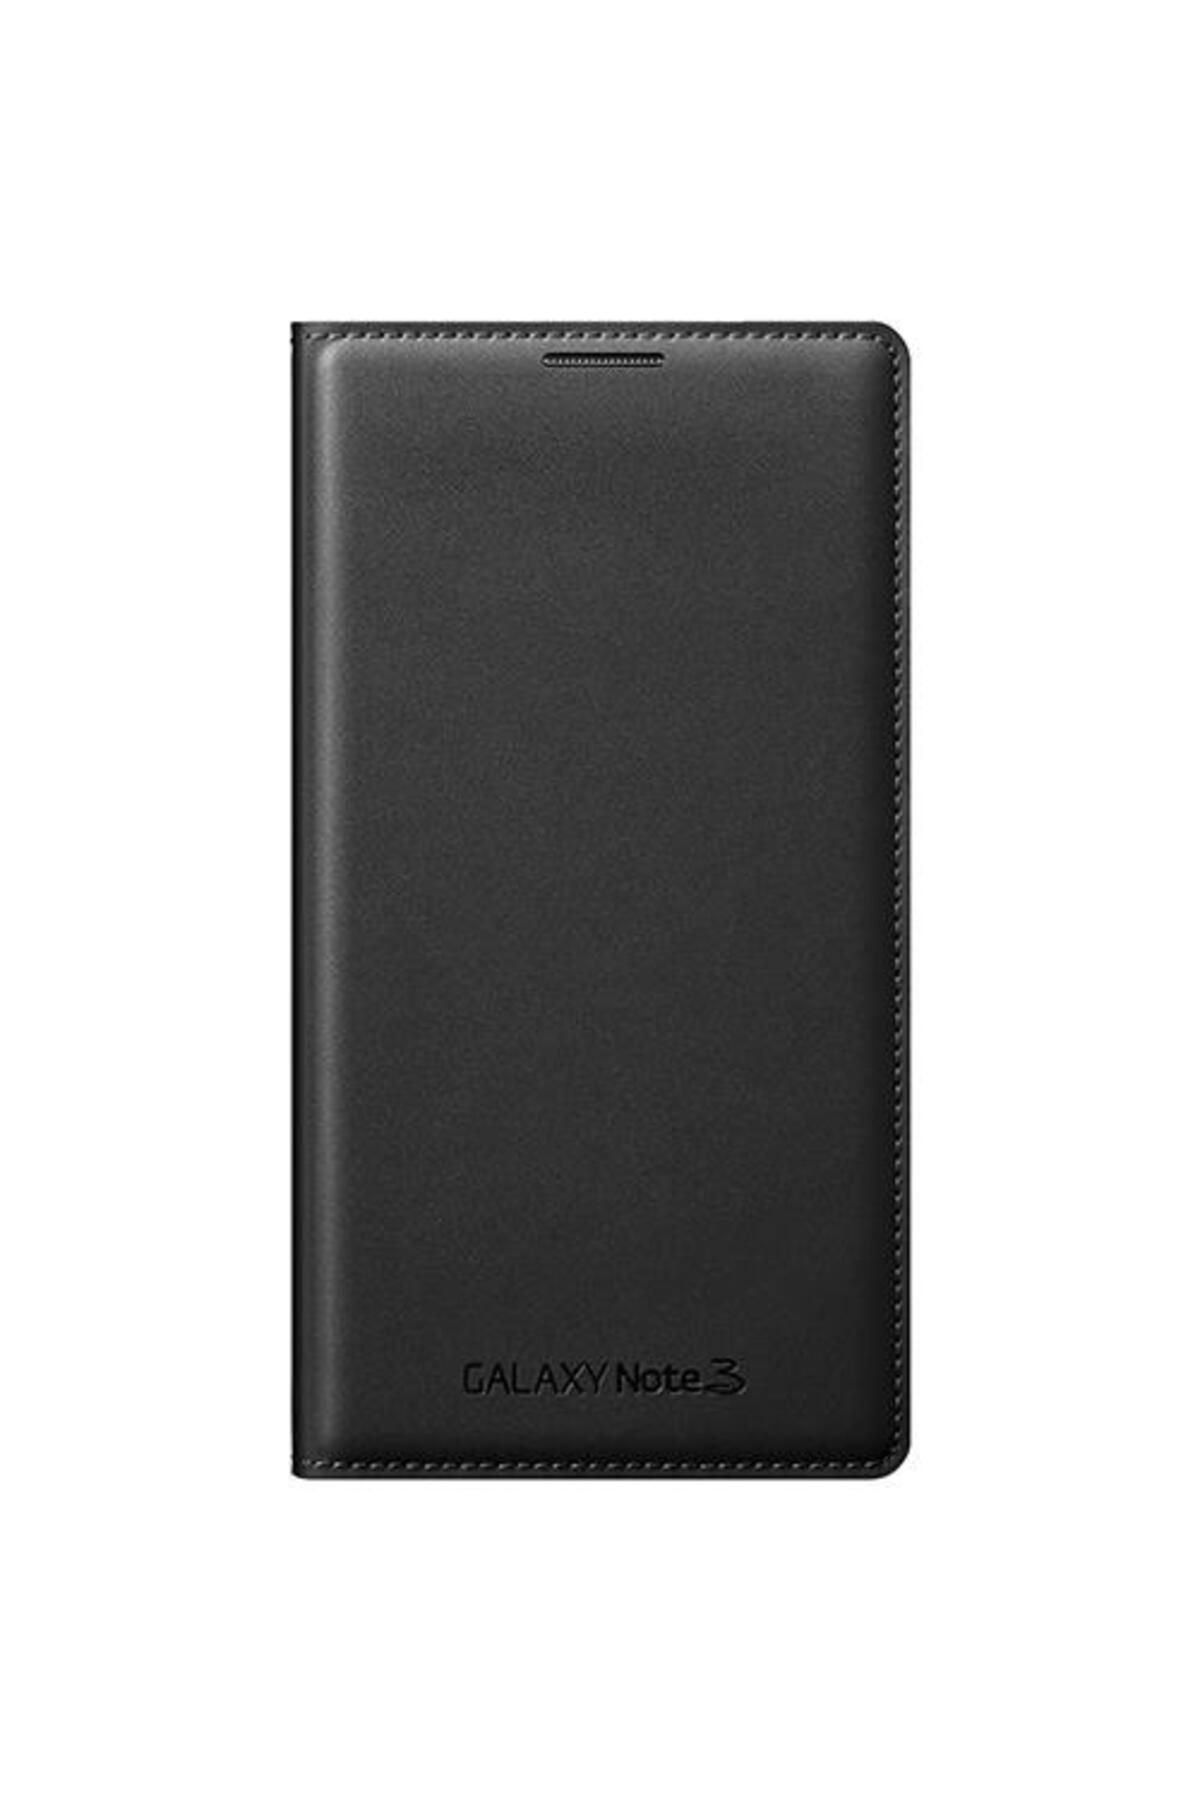 Samsung Galaxy Note 3 N9000 Flip Wallet Kılıf Siyah Ef-wn900b